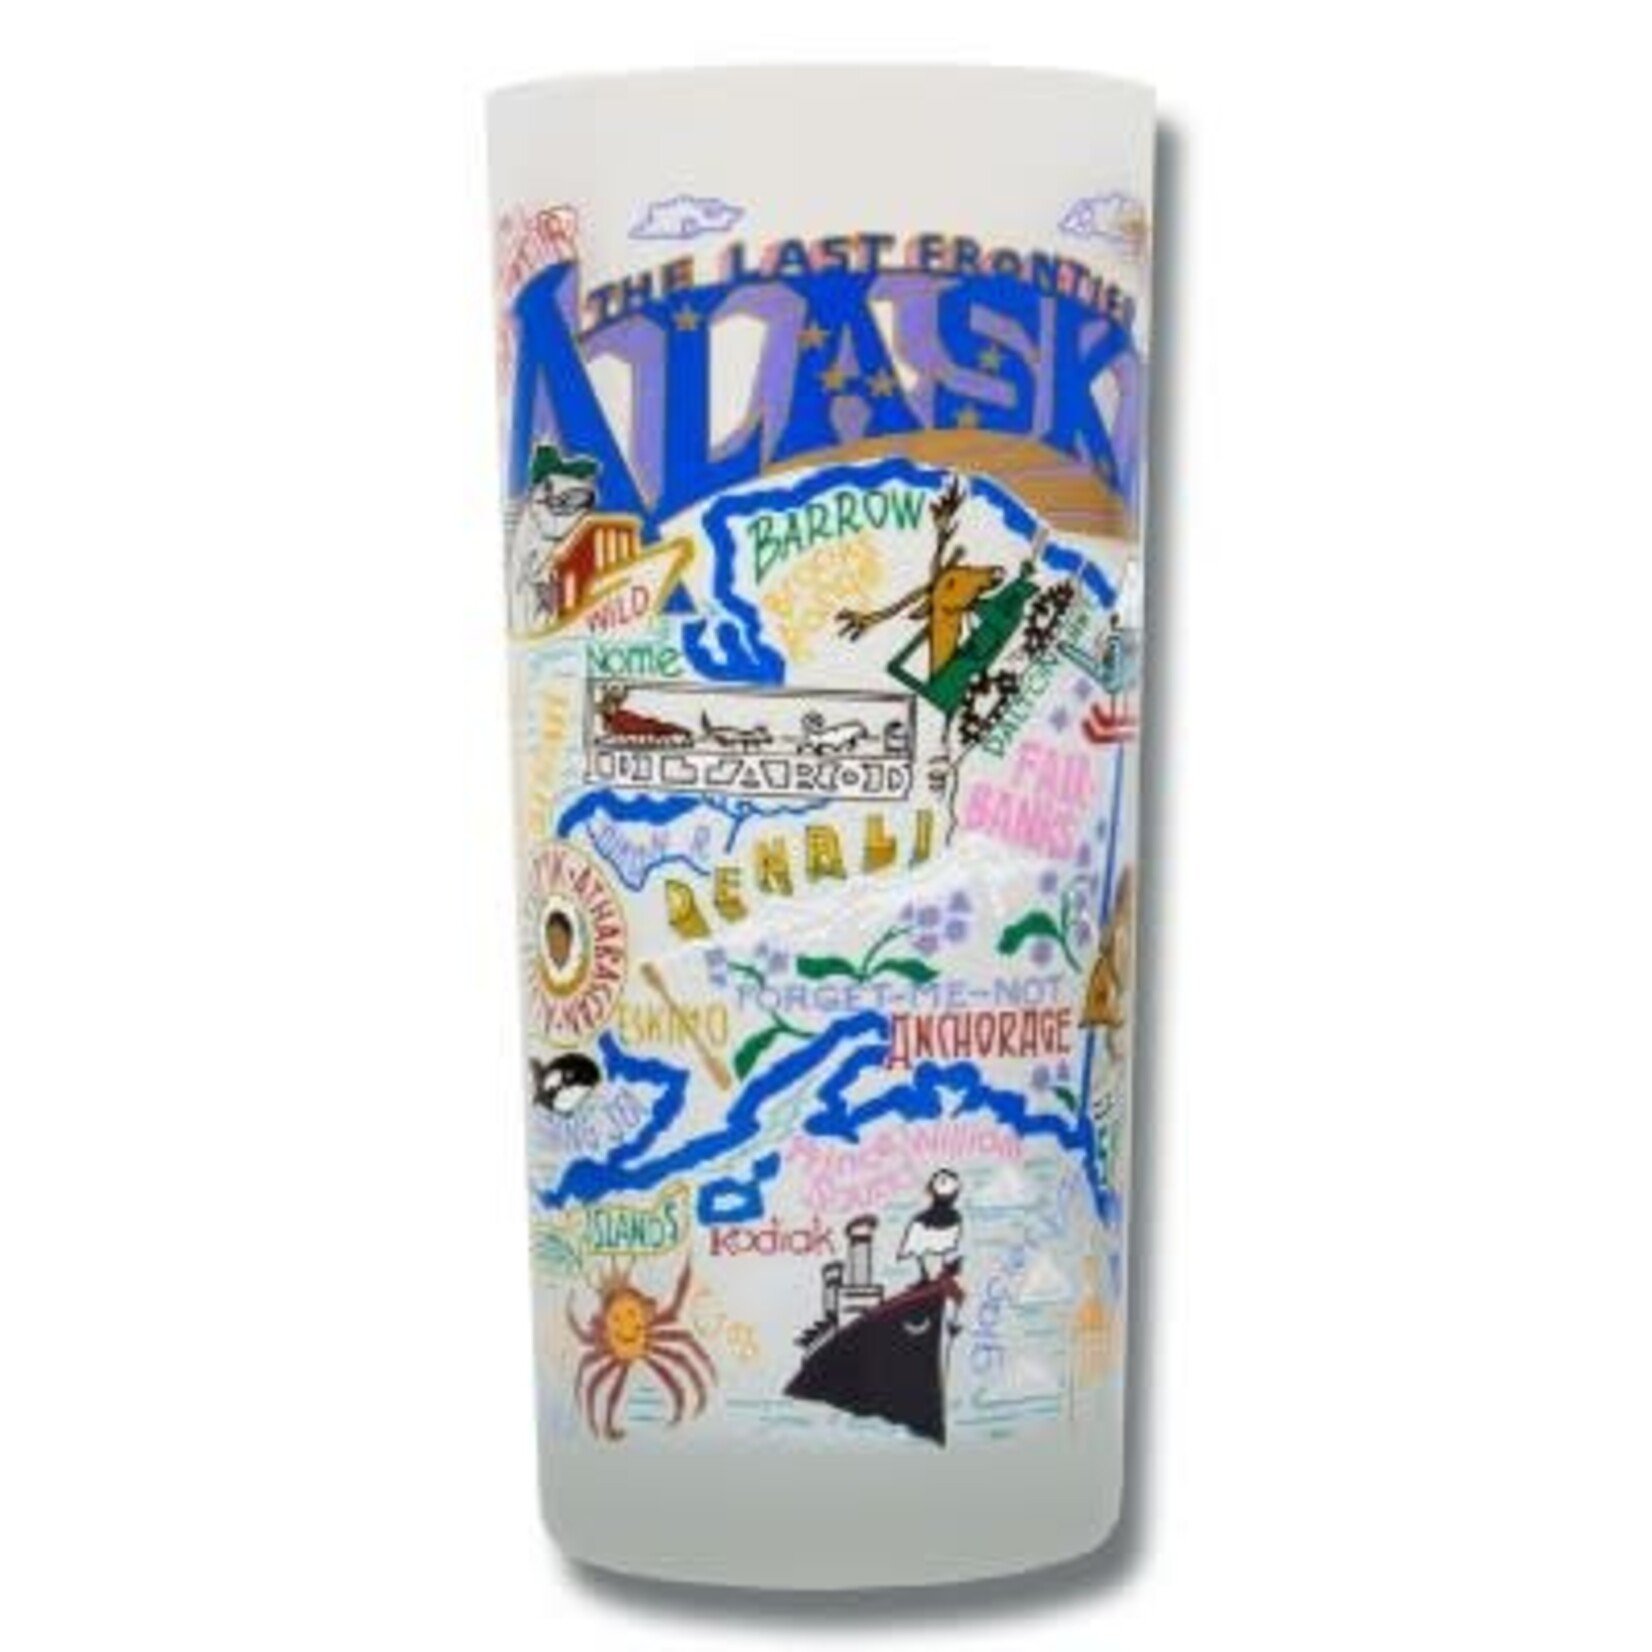 Catstudio Alaska Glass